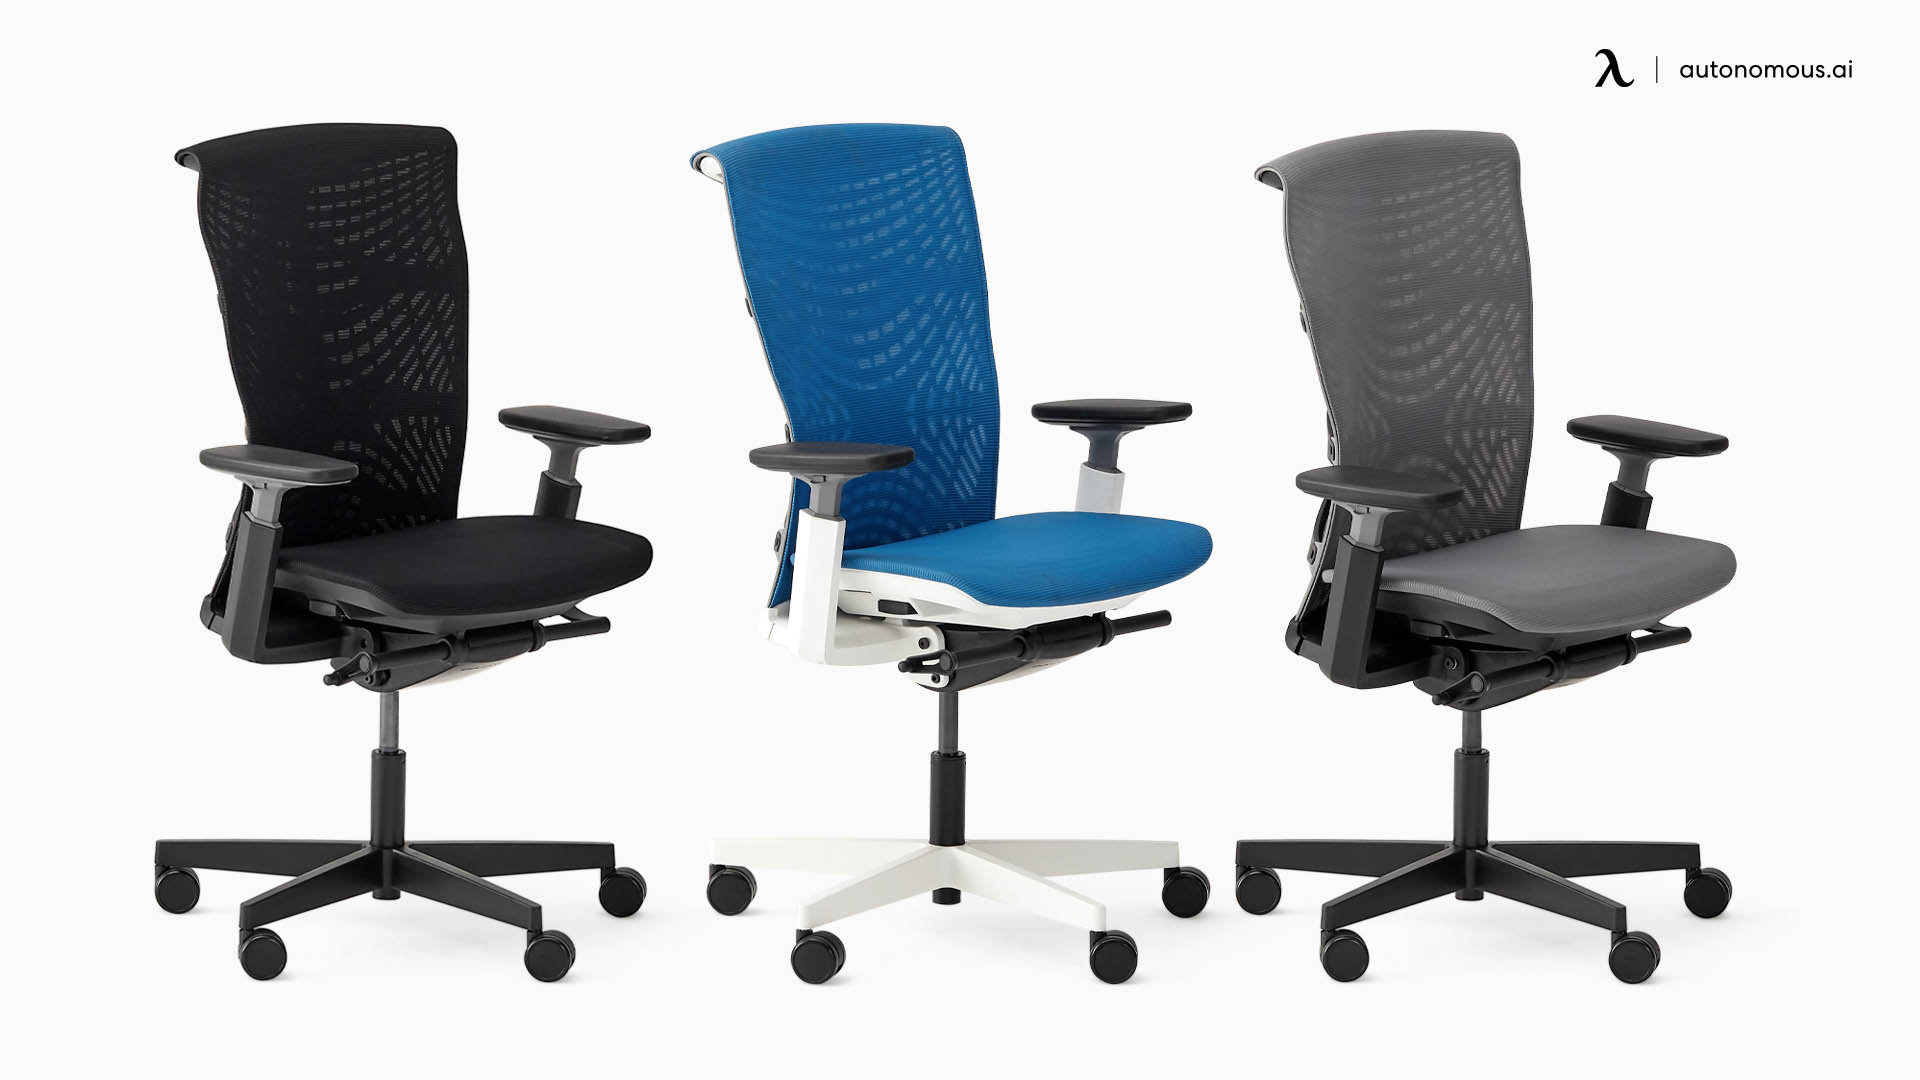 ErgoChair Pro+ by Autonomous comfy office chair